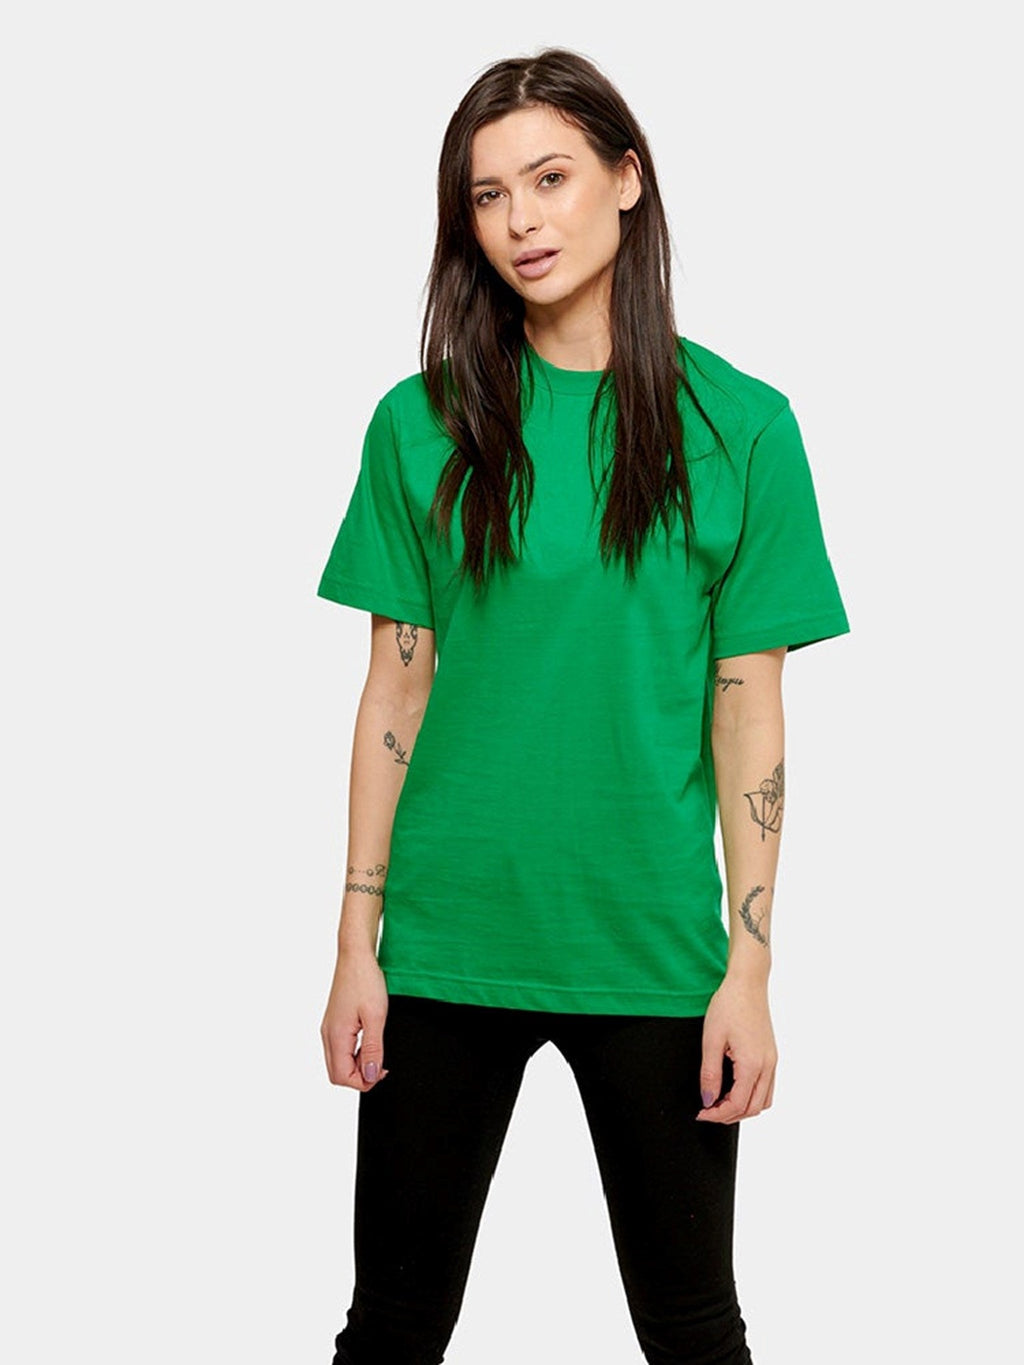 Ylisuuri T-paita-Naisten paketti (6 kpl.)